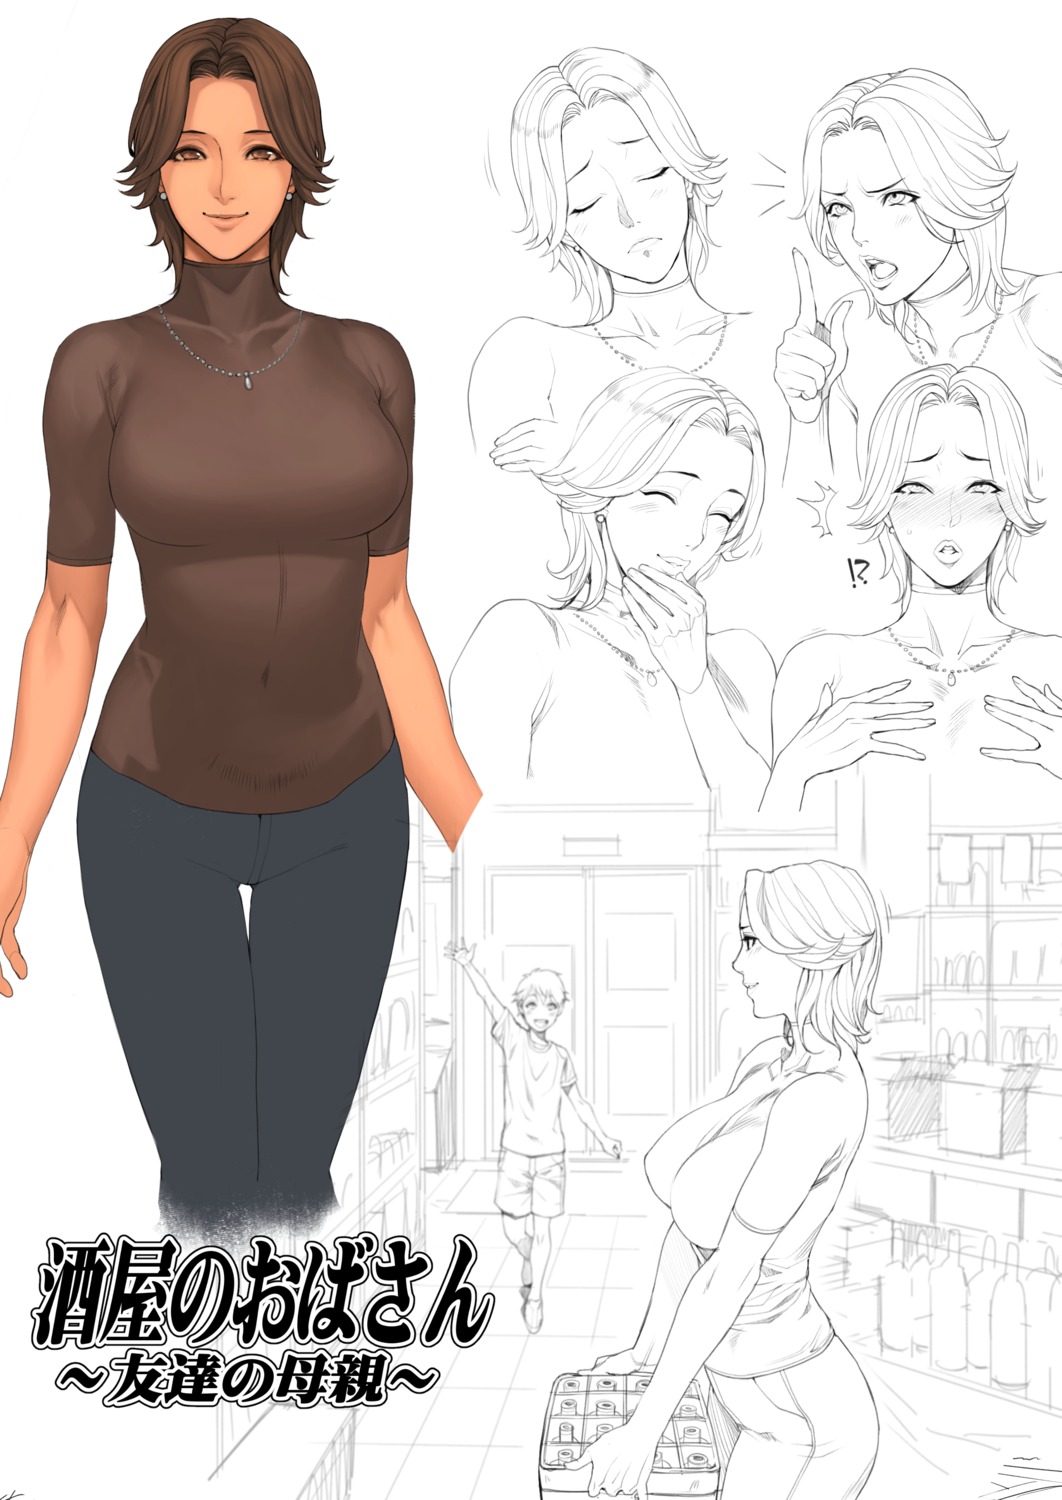 Oda Non Character Design Sketch 498020 Yande Re